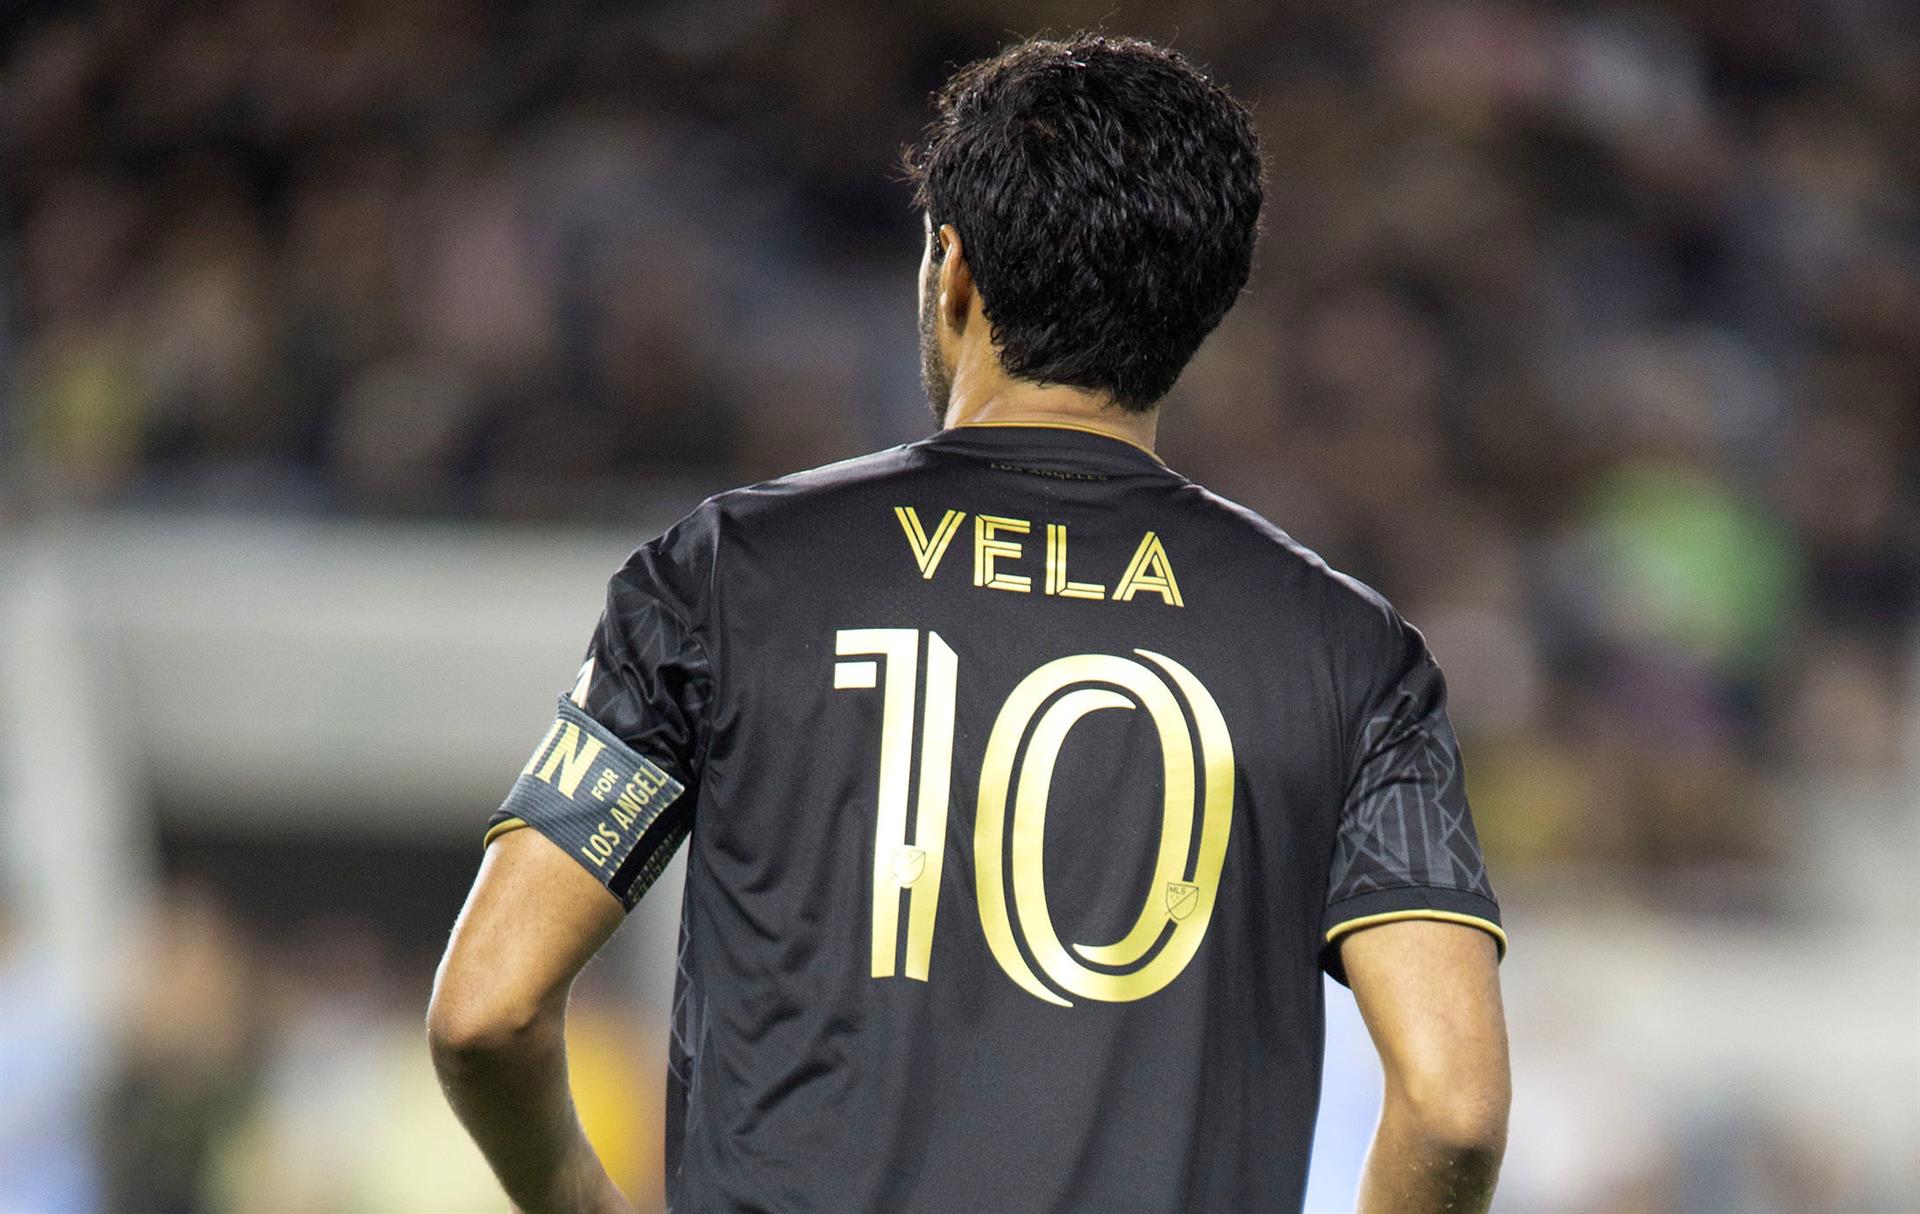 Dopo la firma di Bale, Vela ha annunciato il suo rinnovo